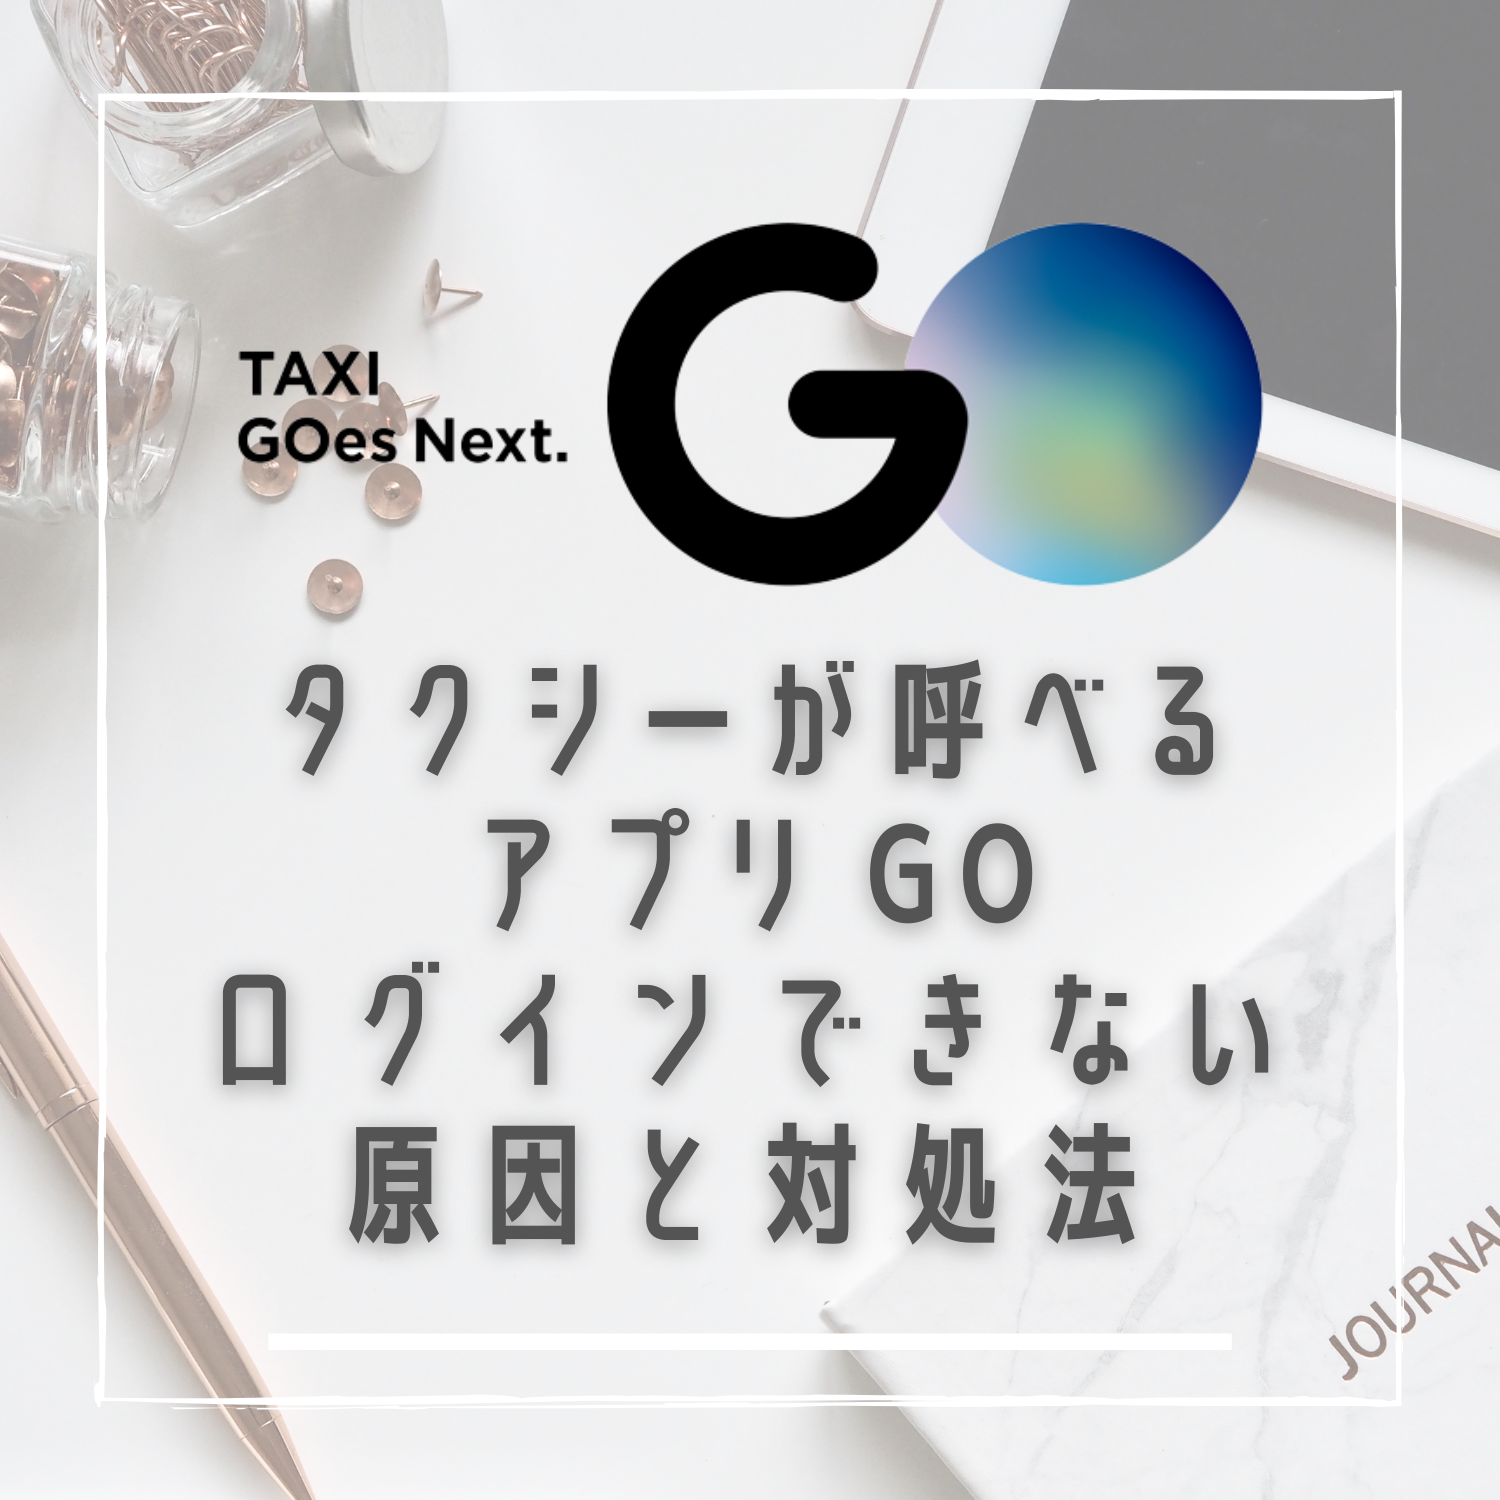 GO タクシーが呼べるアプリ 旧MOV×JapanTaxi(ゴー)にログインできない原因と対処法とは #ゴー